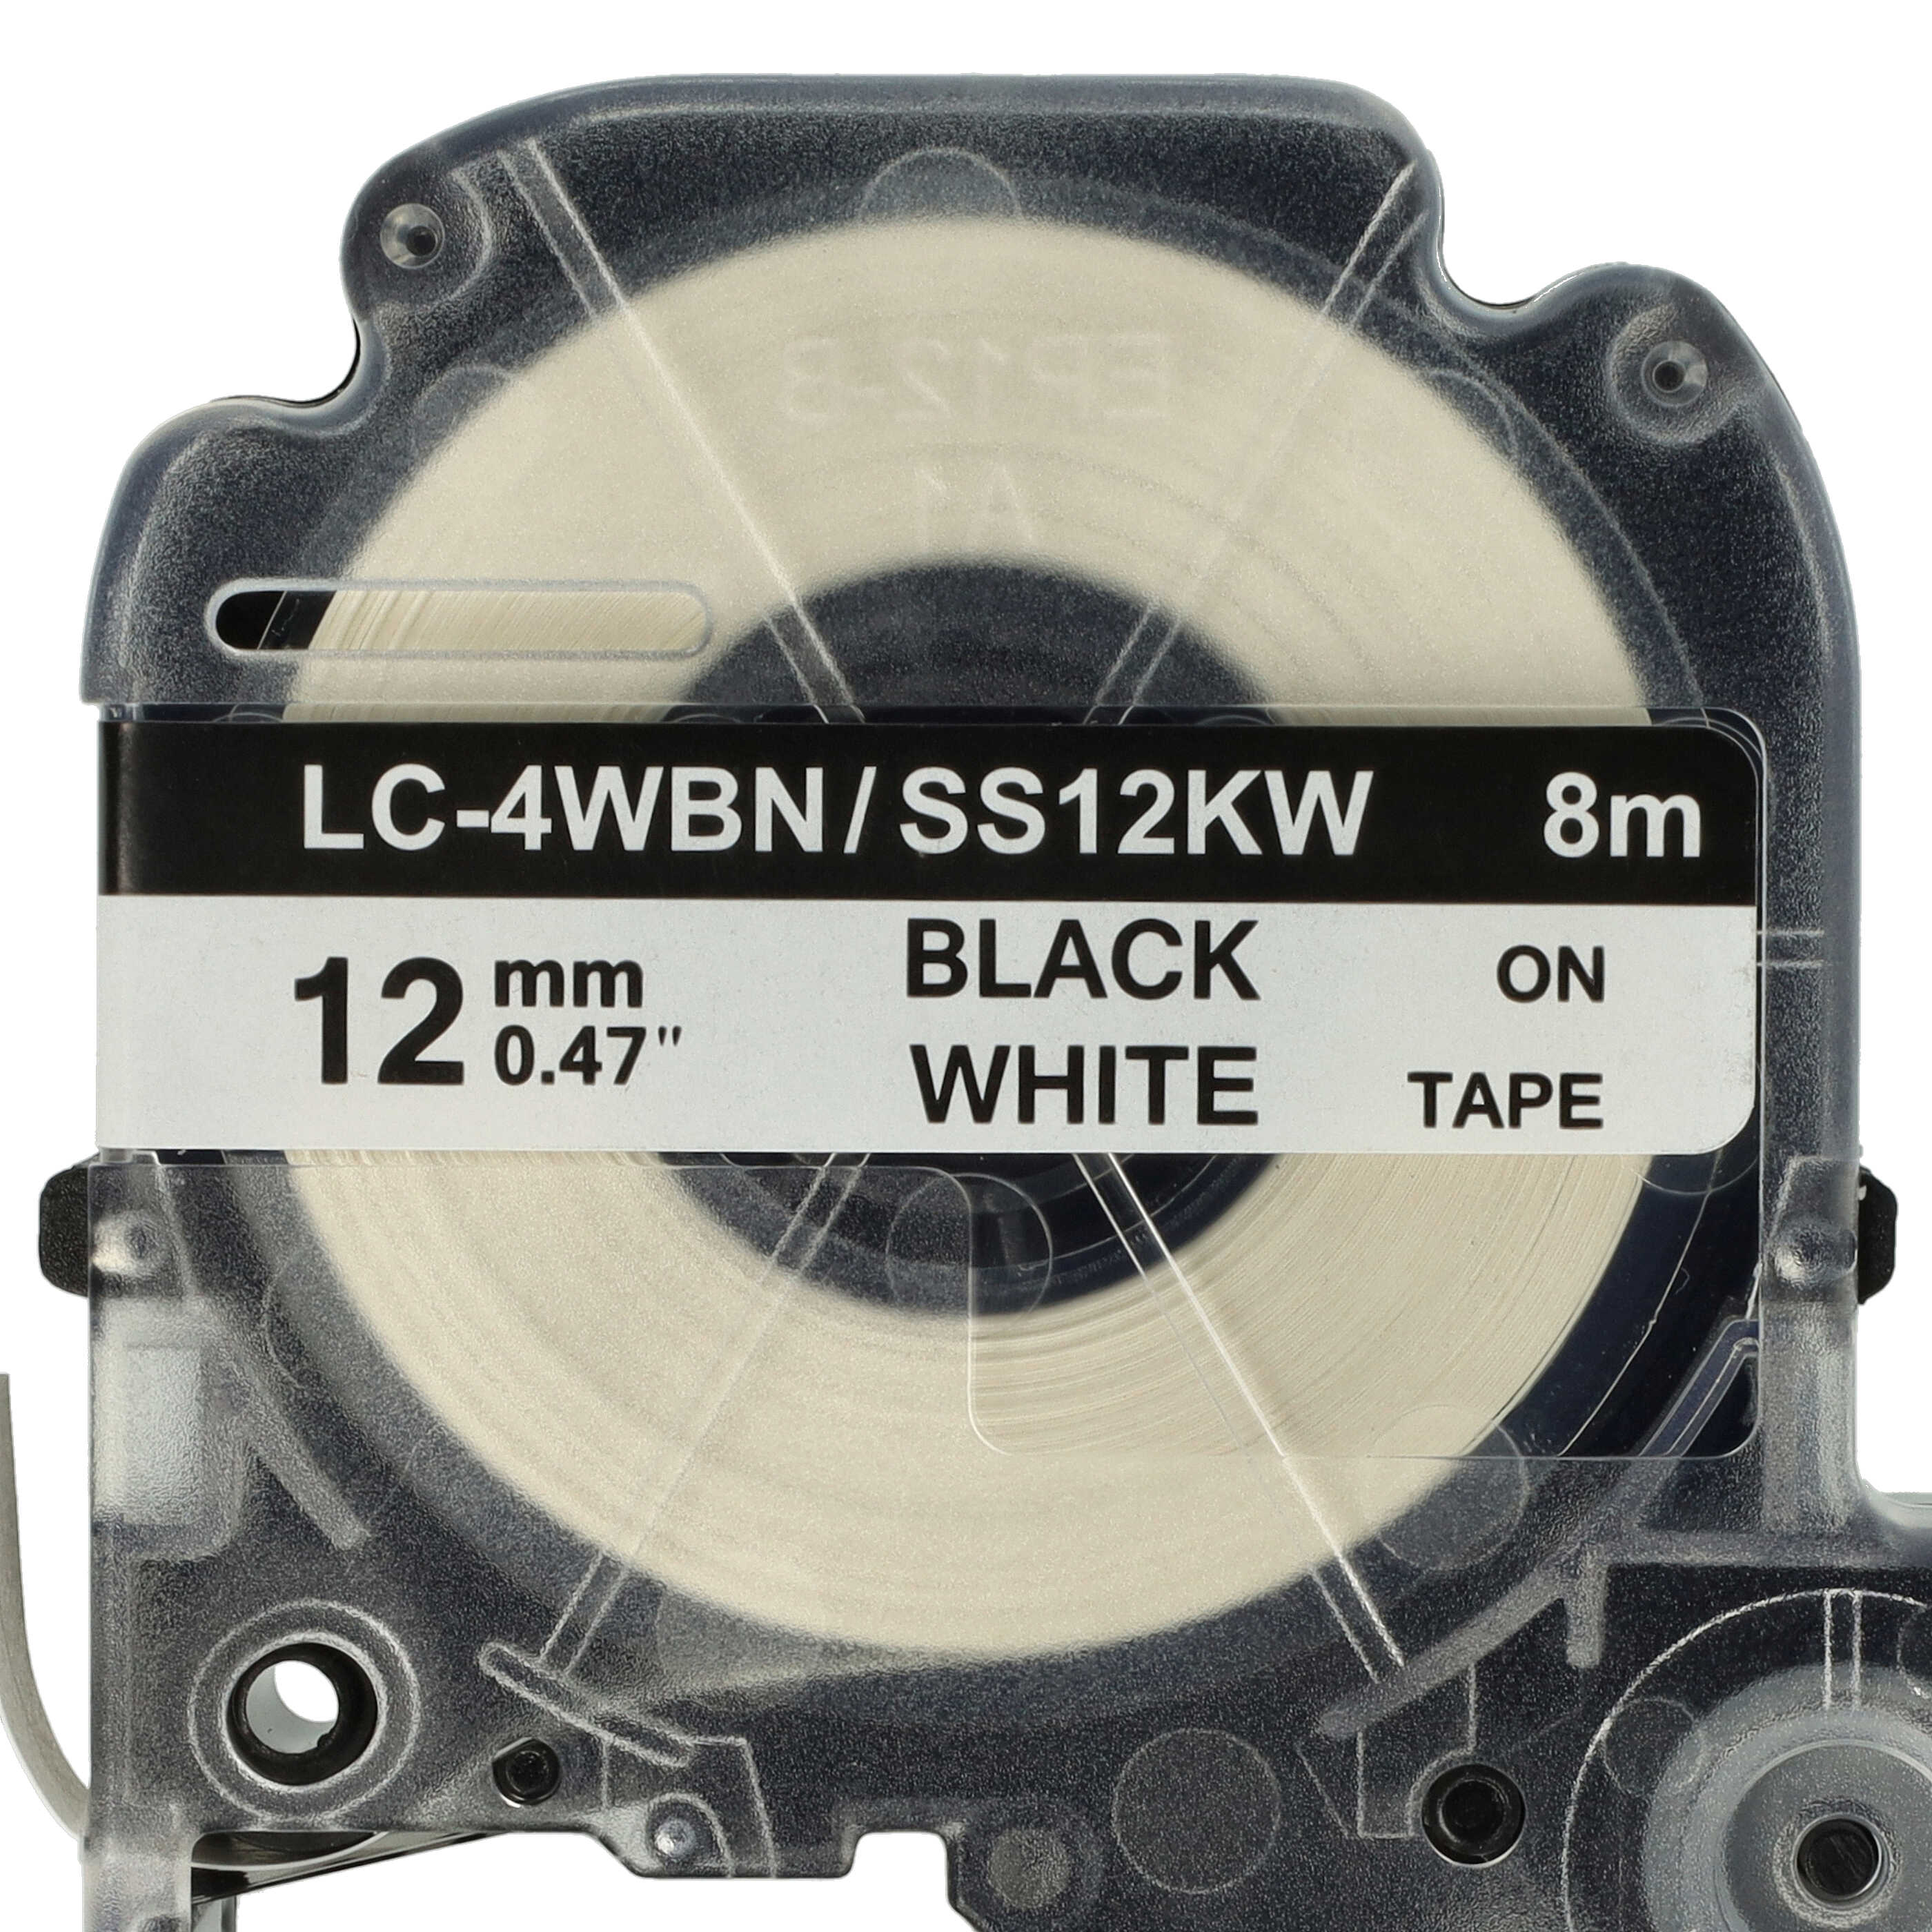 2x Taśma do etykiet zam. Epson SS12KW, LC-4WBN - 12mm, napis czarny / taśma biała